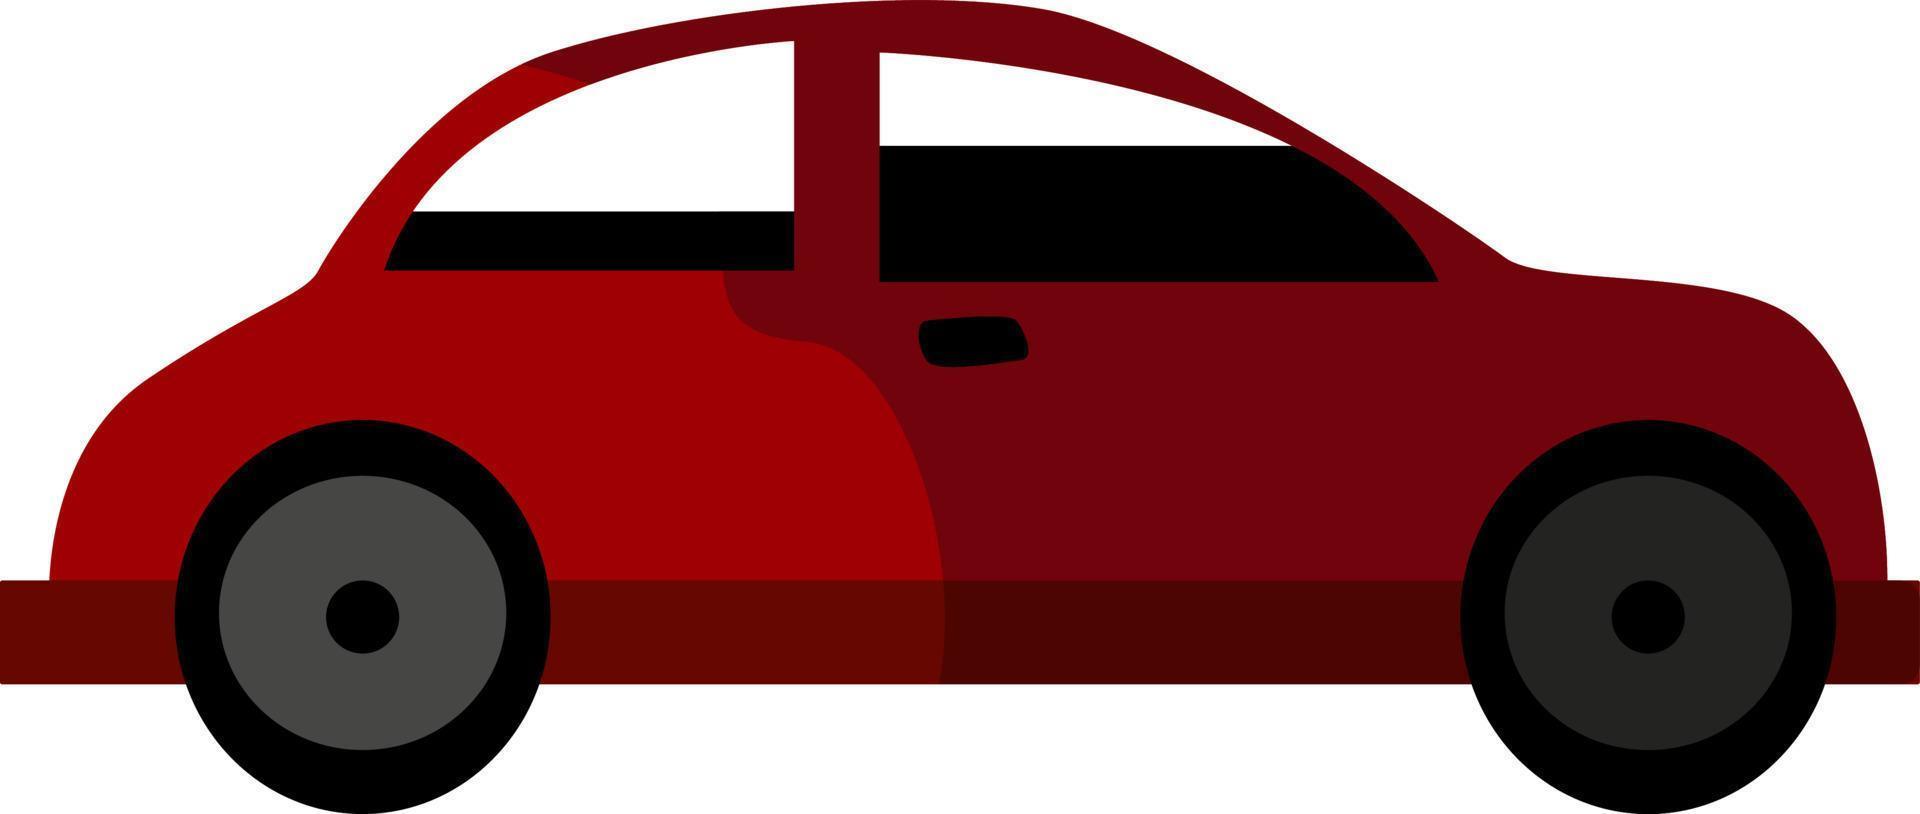 voiture rouge, illustration, vecteur sur fond blanc.